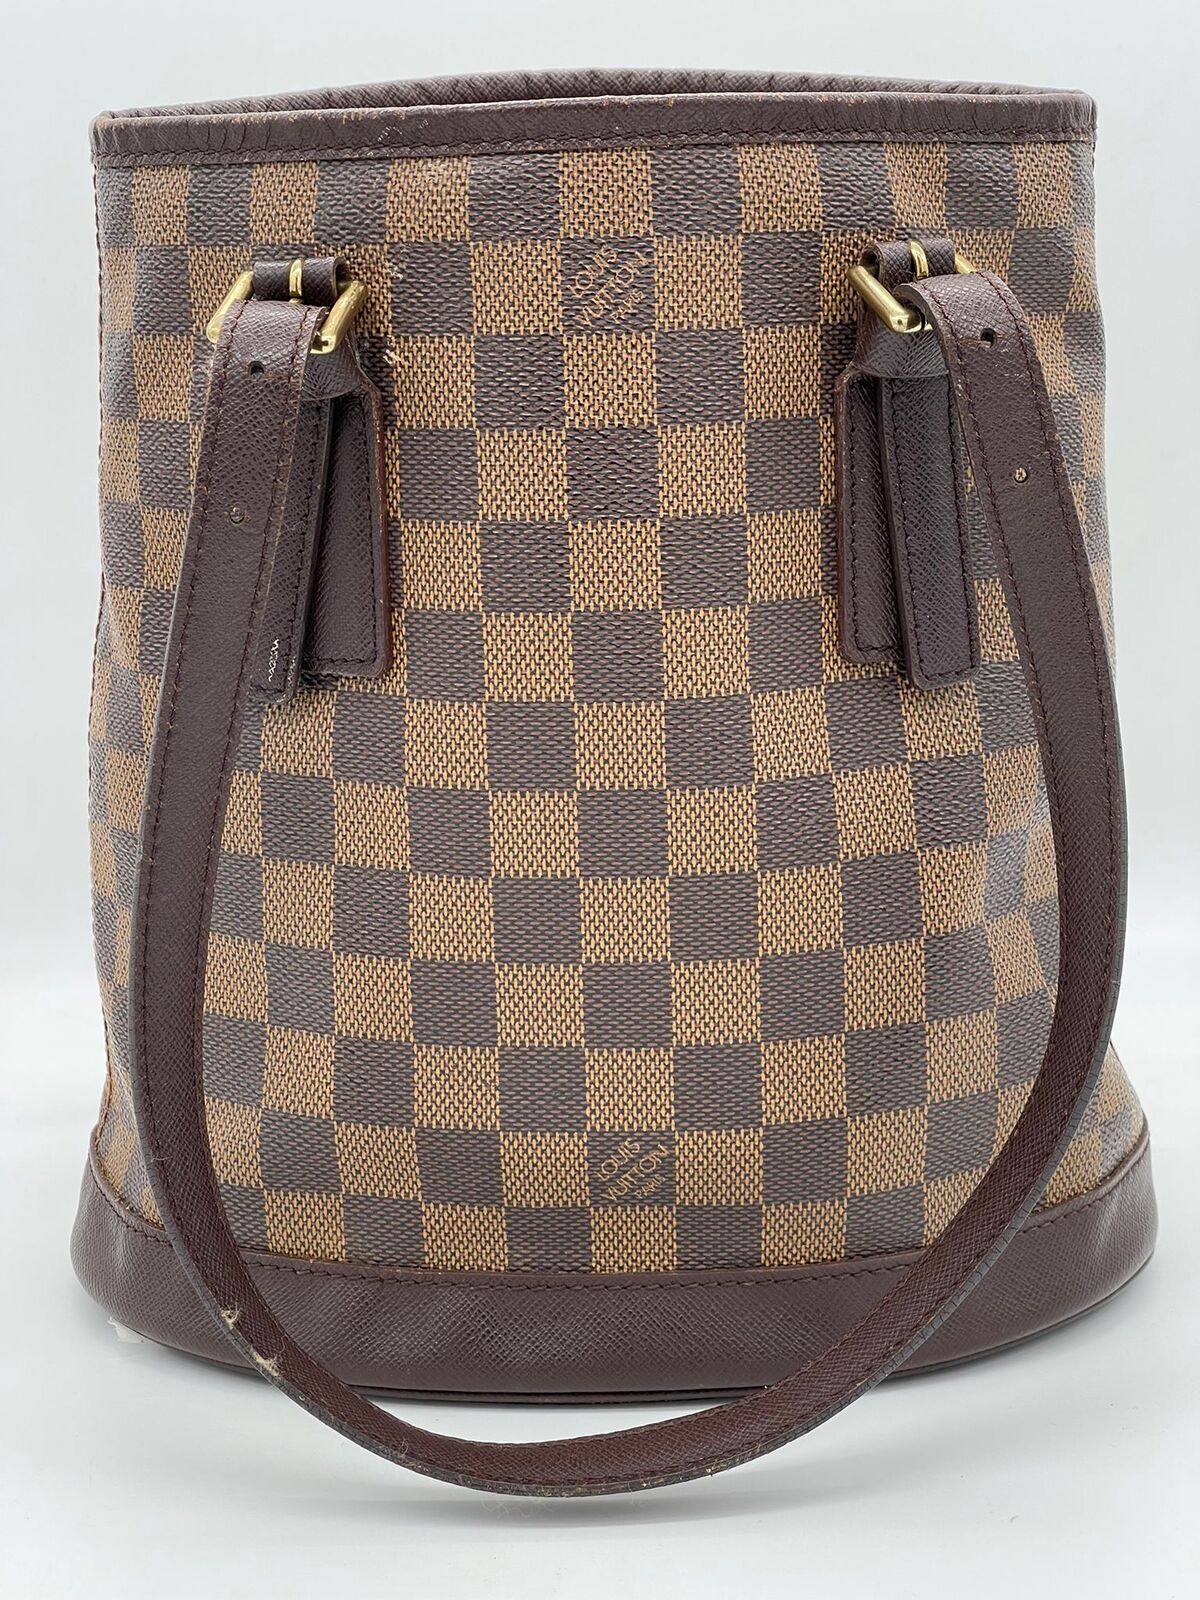 Louis Vuitton Damier Marais Bucket Shoulder Bag N42240 Tote Authentic